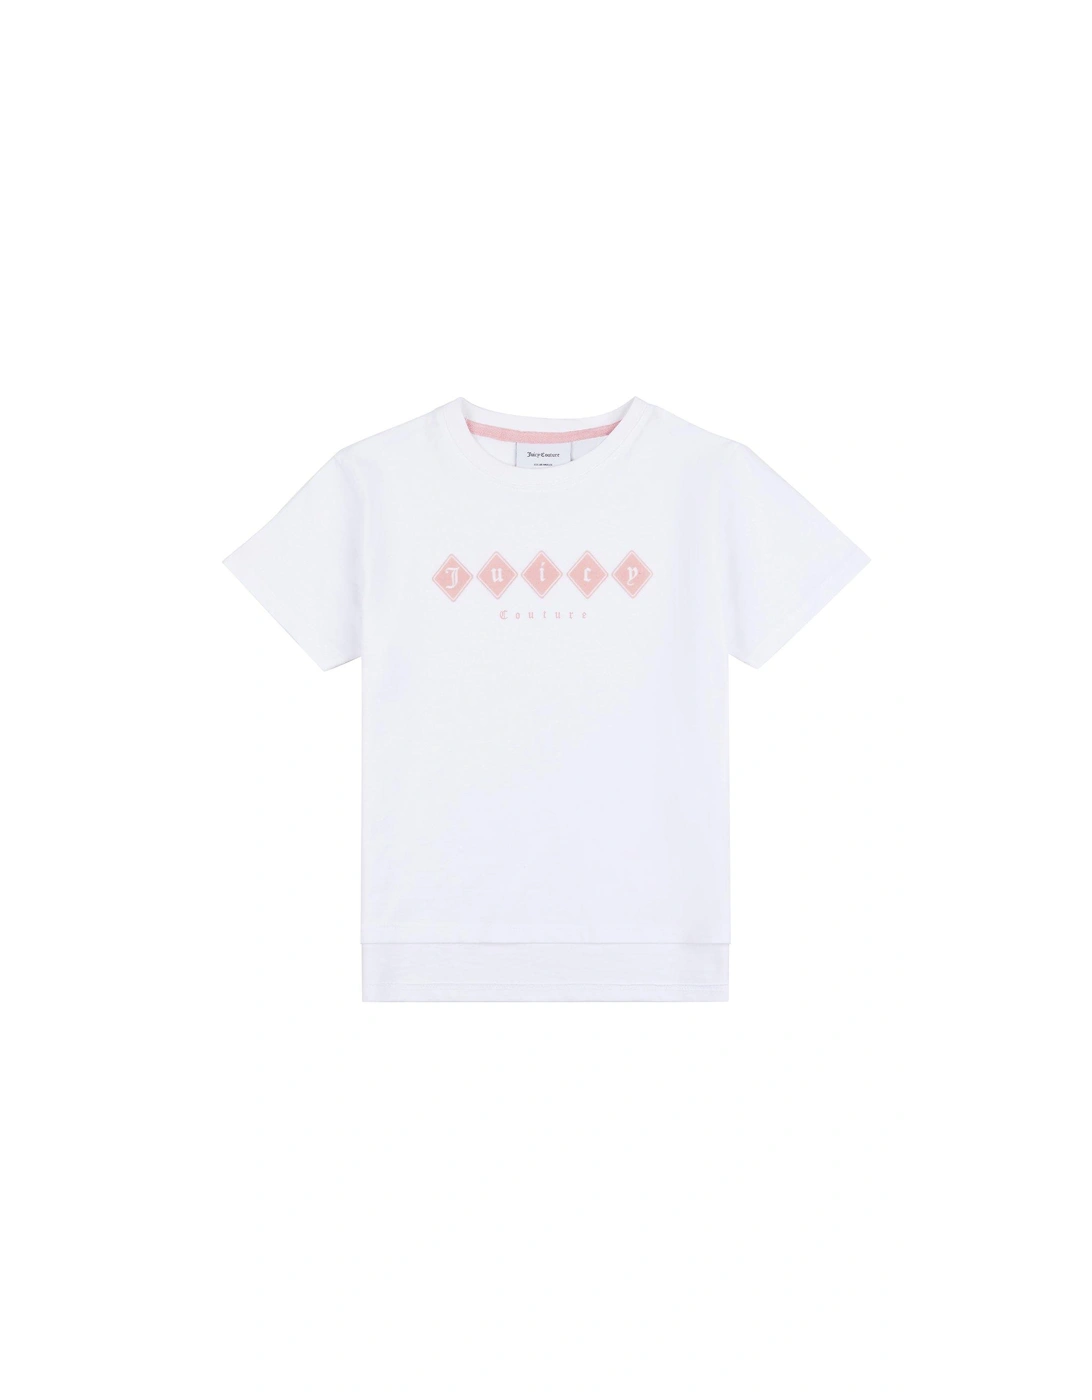 Girls Tonal Short Sleeve T-shirt - Bright White, 3 of 2